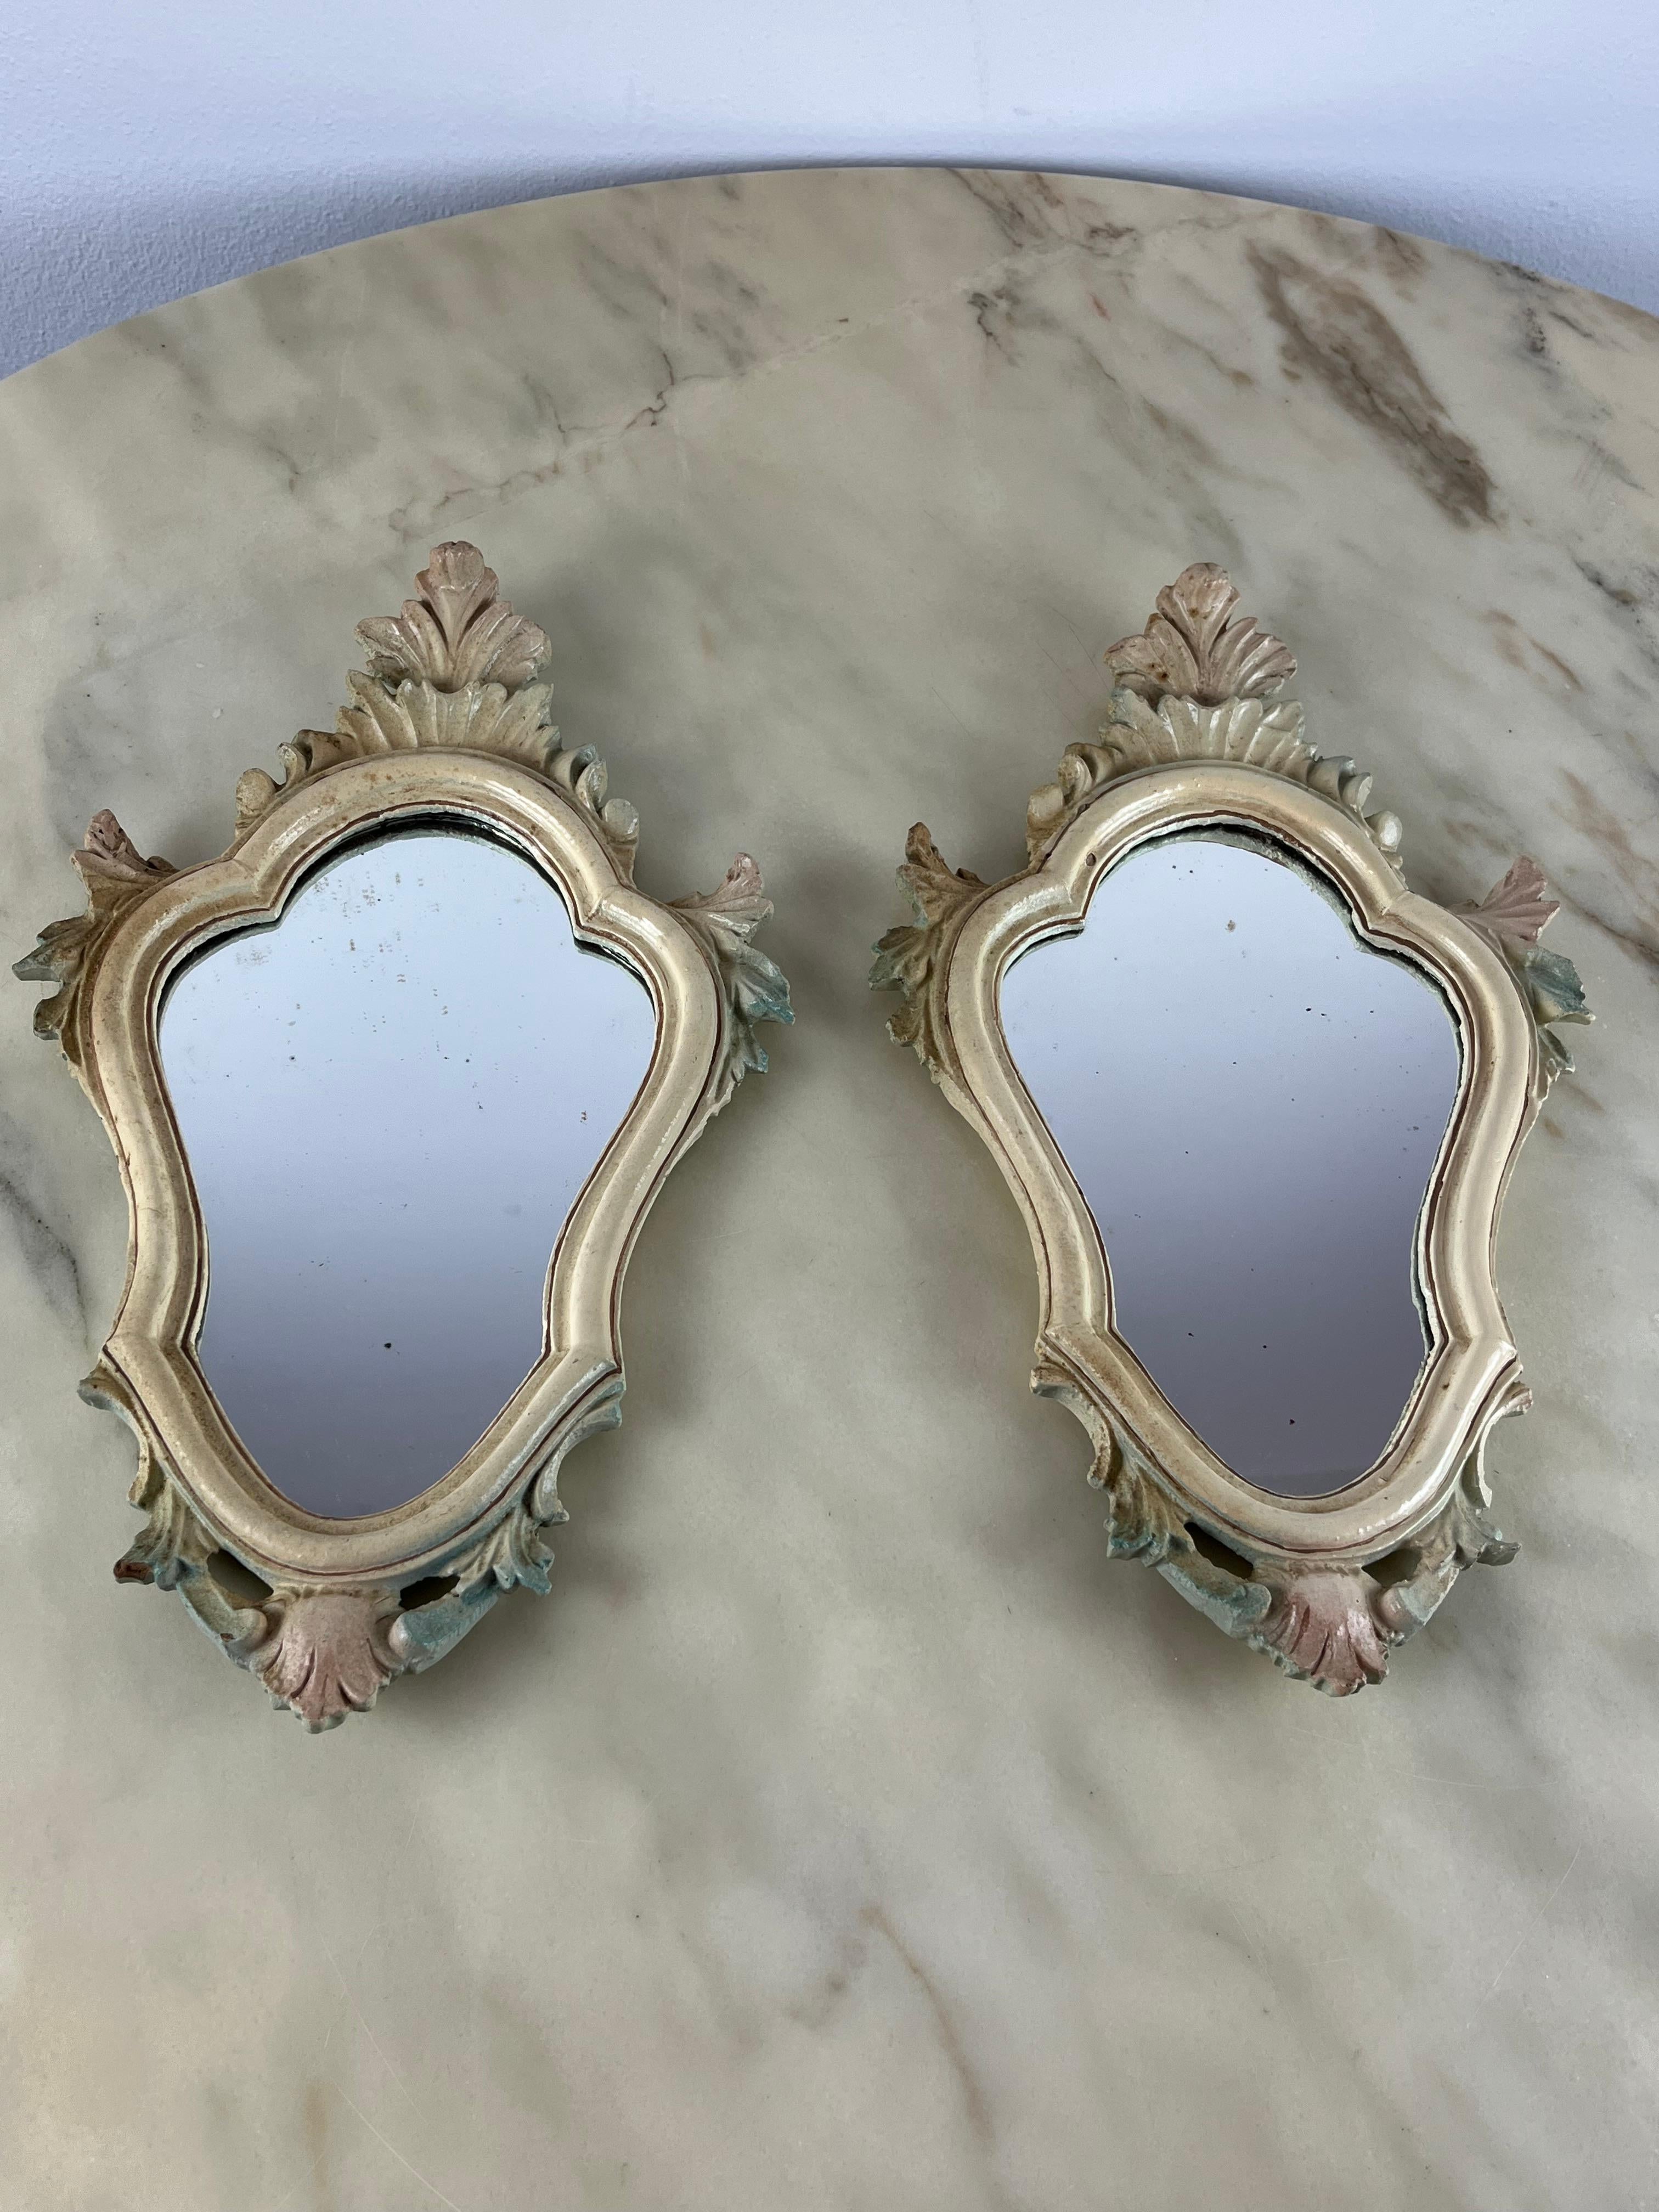 Paire de miroirs de chevet vénitiens, Italie, années 1960.
Elles appartenaient à mes grands-parents qui les avaient placées sur les tables de chevet de leur chambre à coucher de style vénitien (baroque). Production italienne des années 60. Les